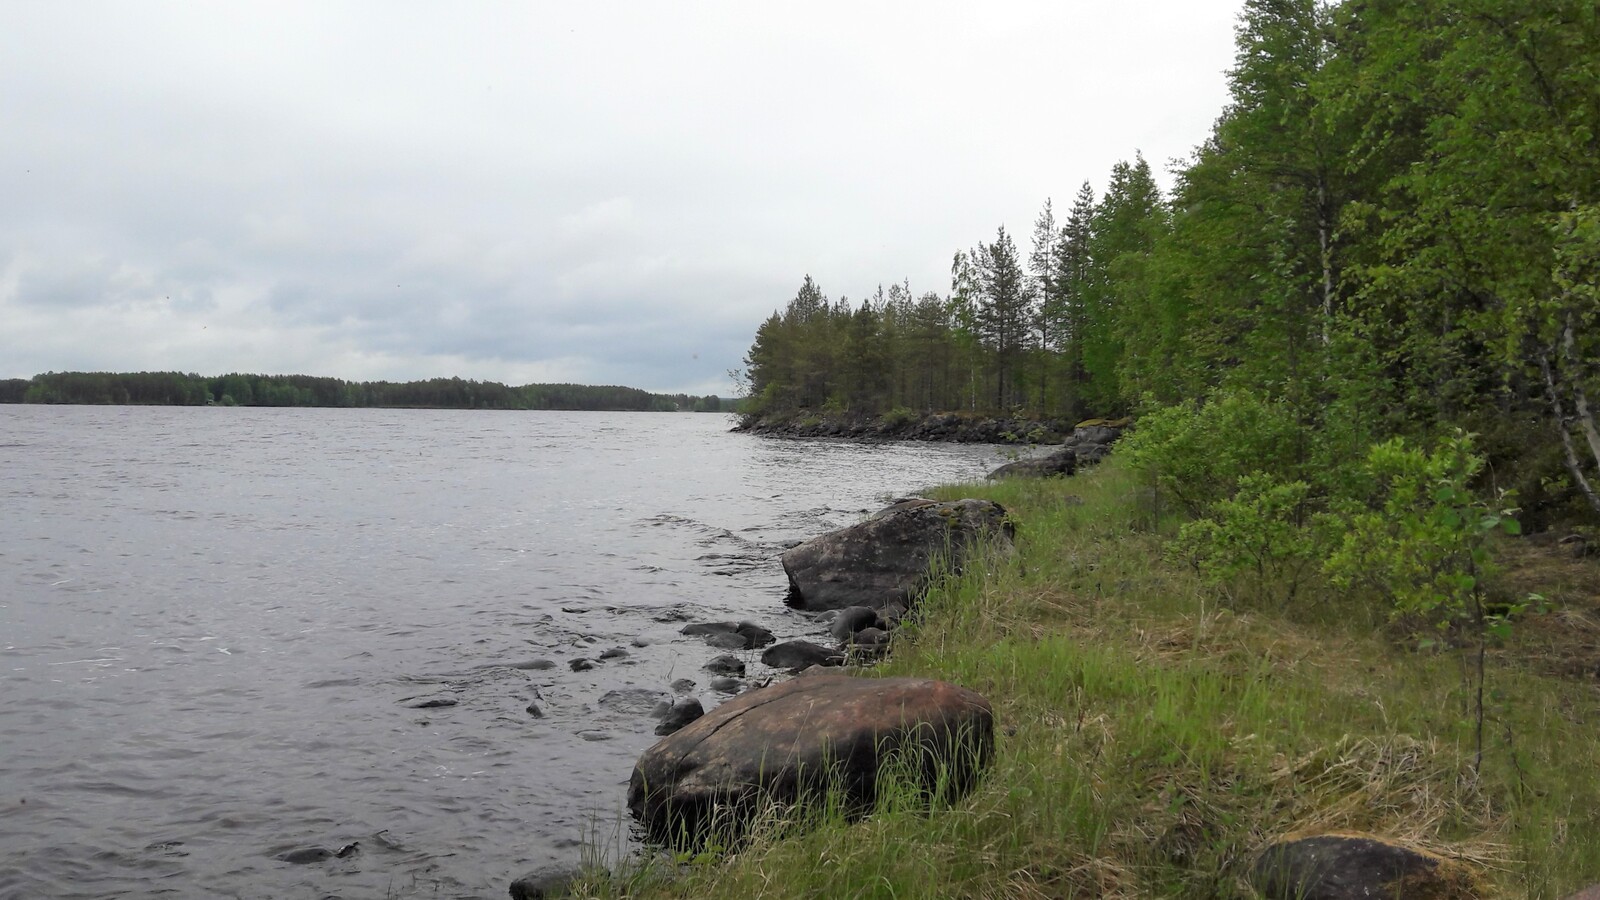 Kesäinen metsä reunustaa järveä vasemmalle kaartavassa kivisessä rantaviivassa.